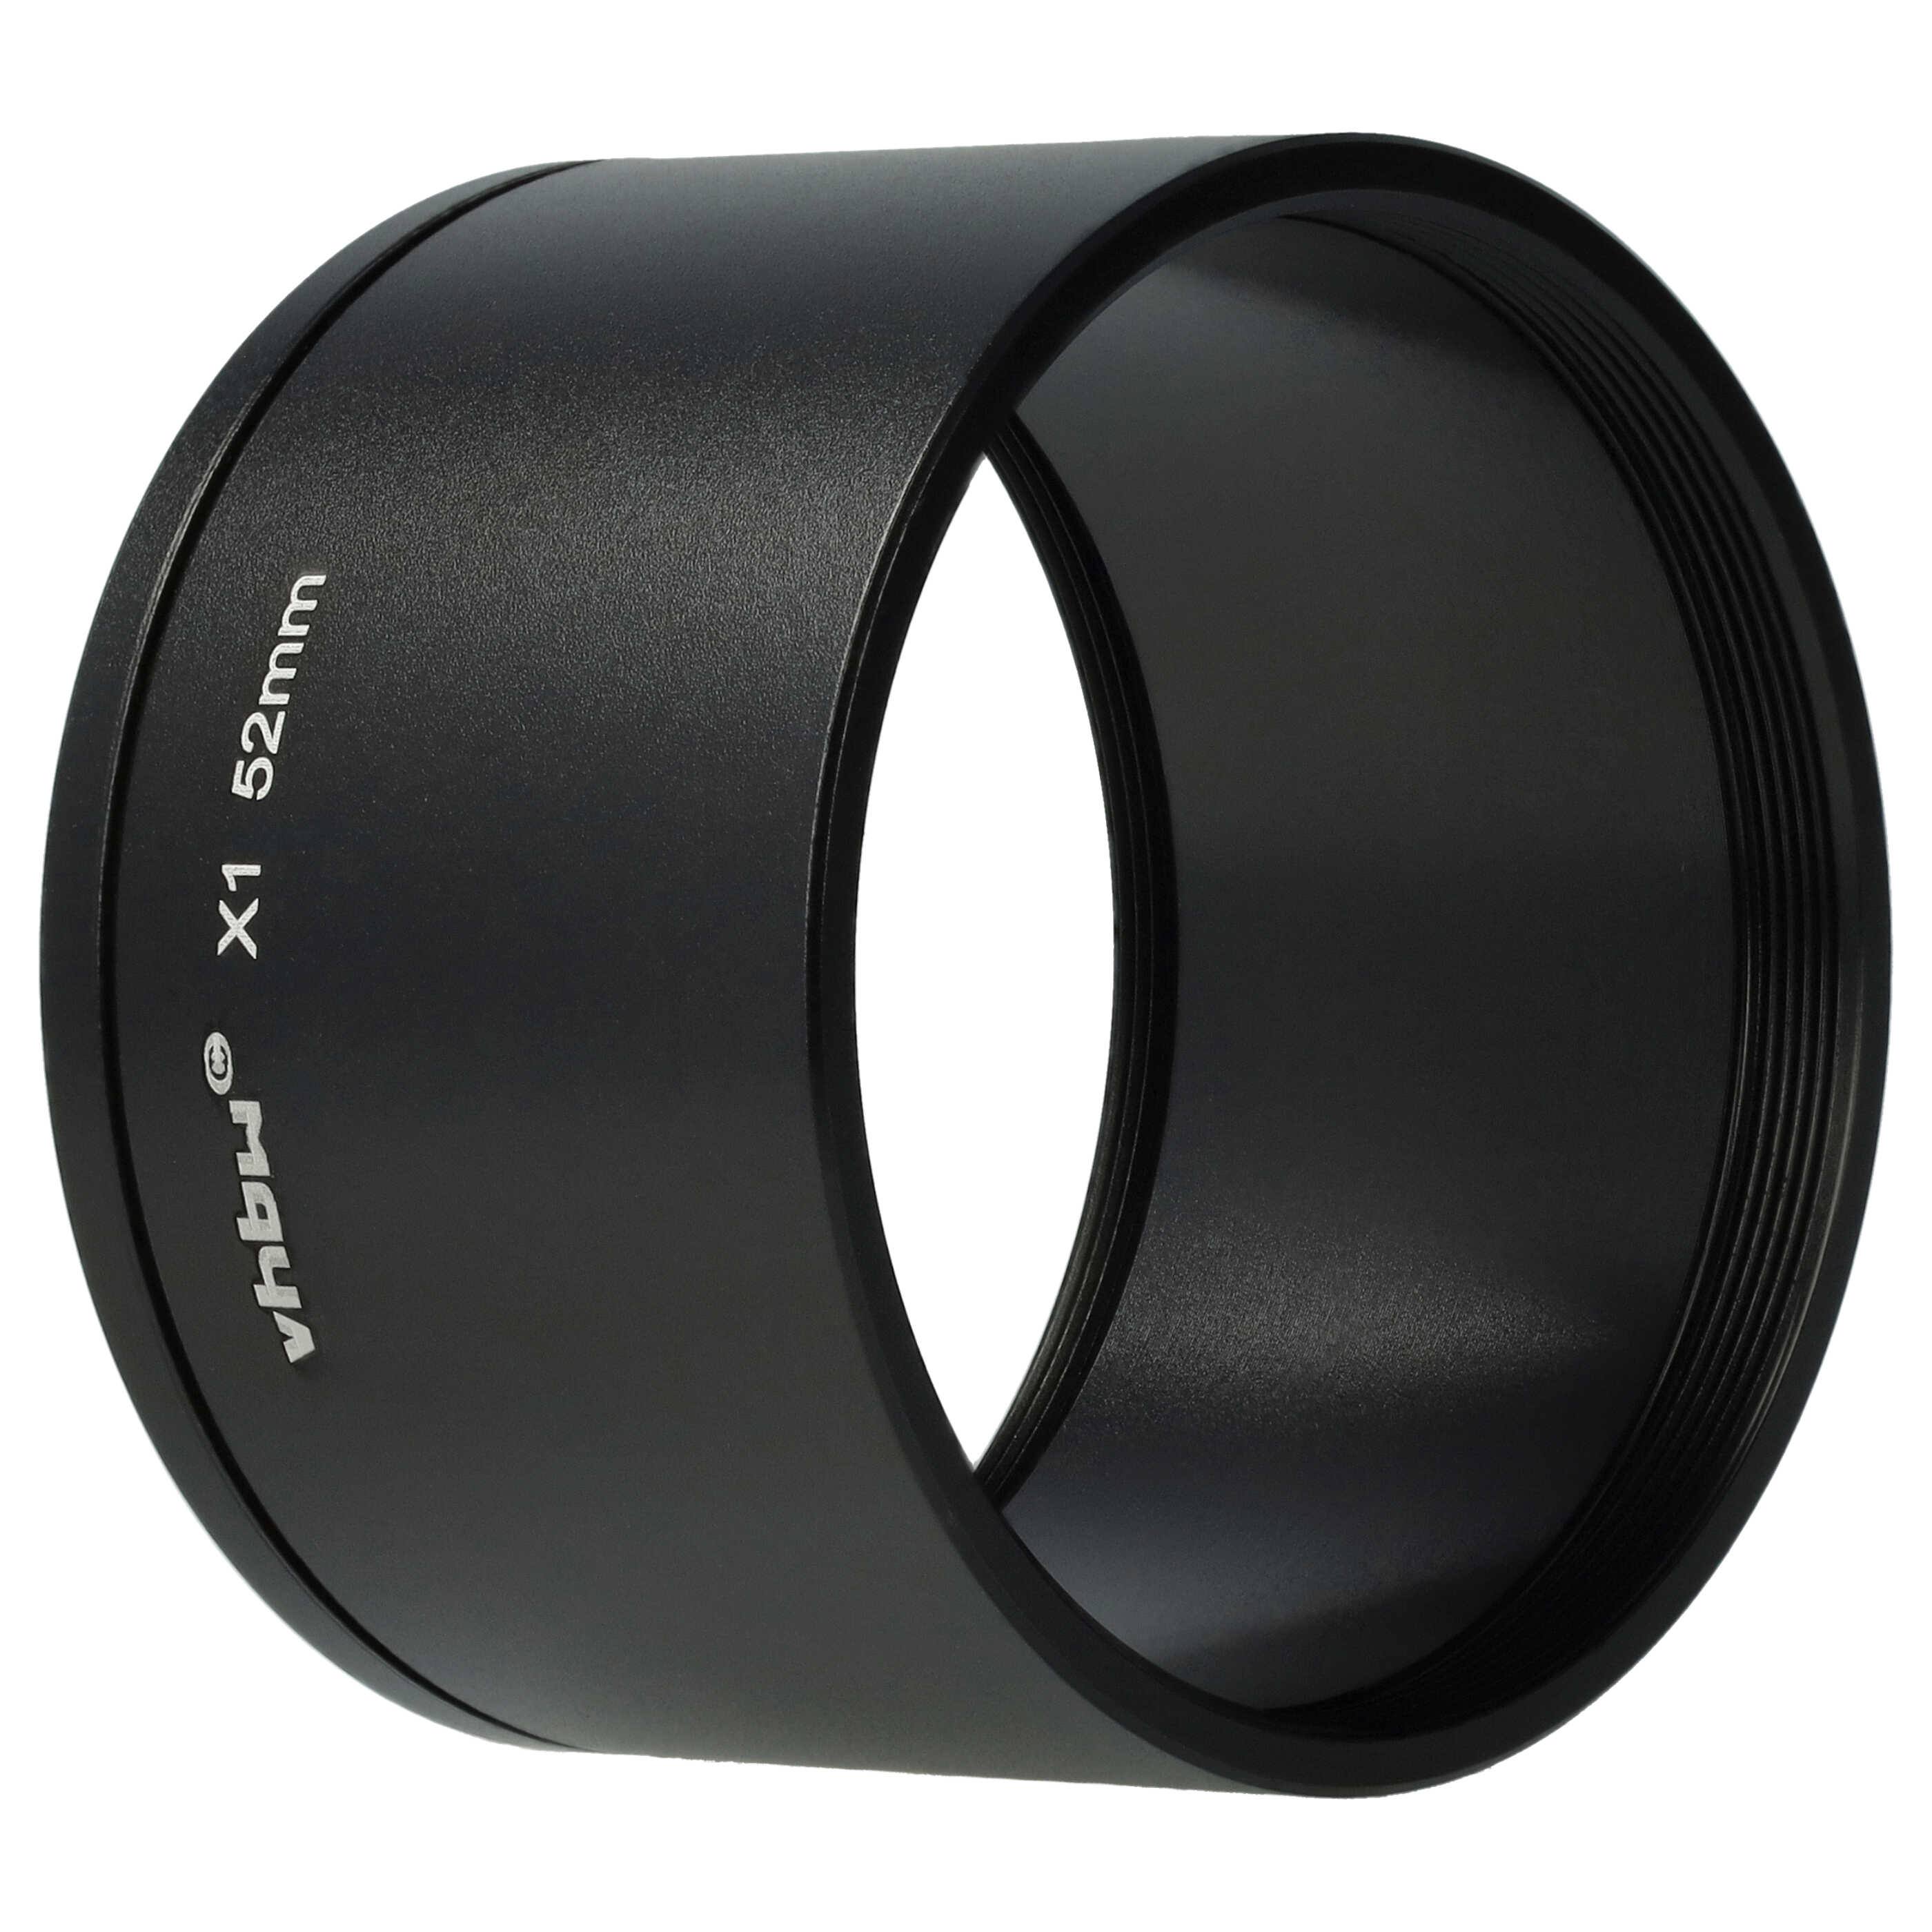 Adaptador de filtro 52 mm para objetivo cámara Leica X1, X2